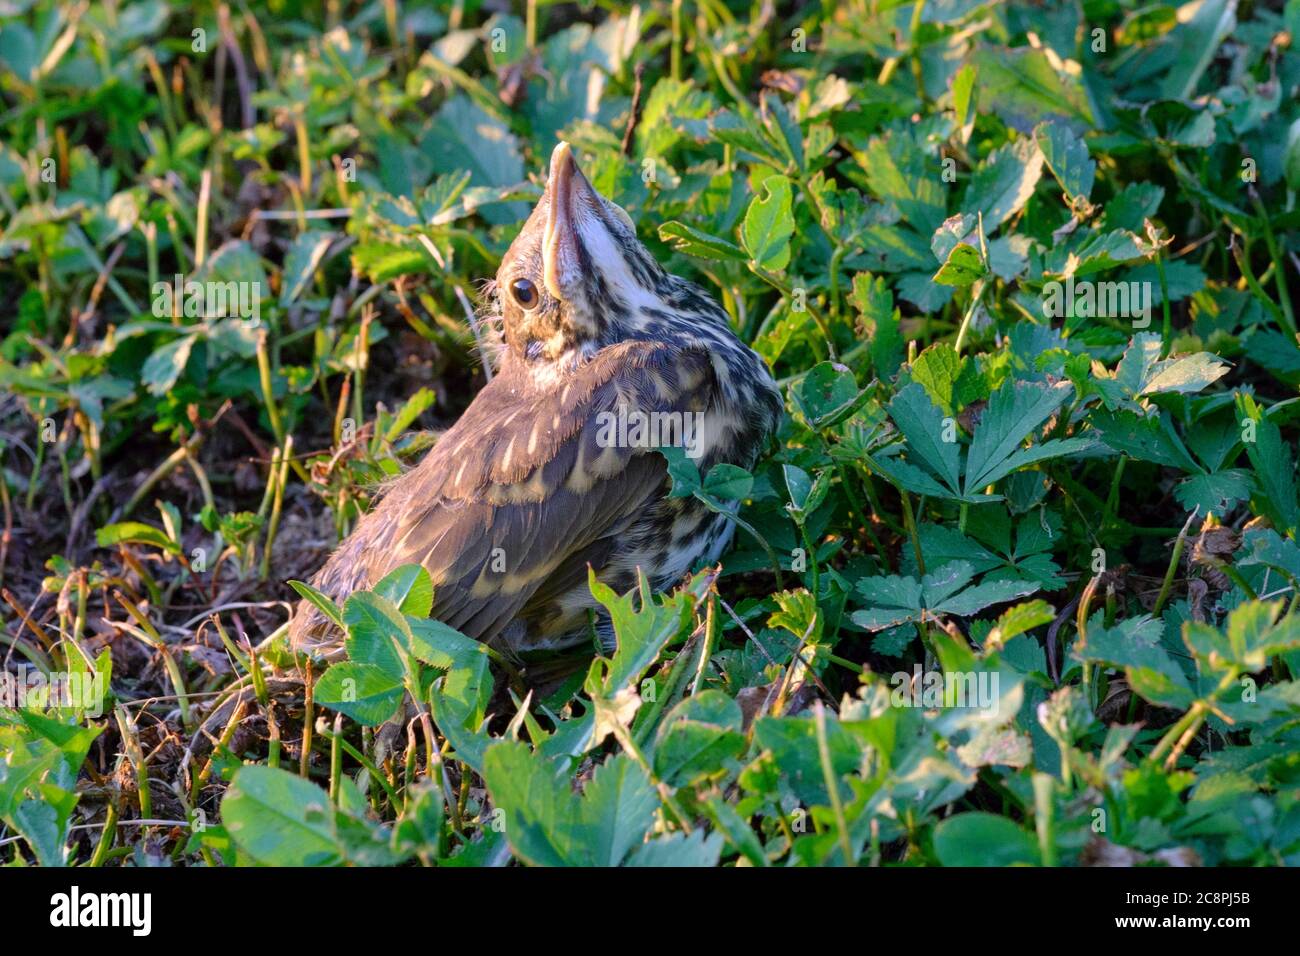 thrush chick sitting on the ground of rural garden zala county hungary Stock Photo